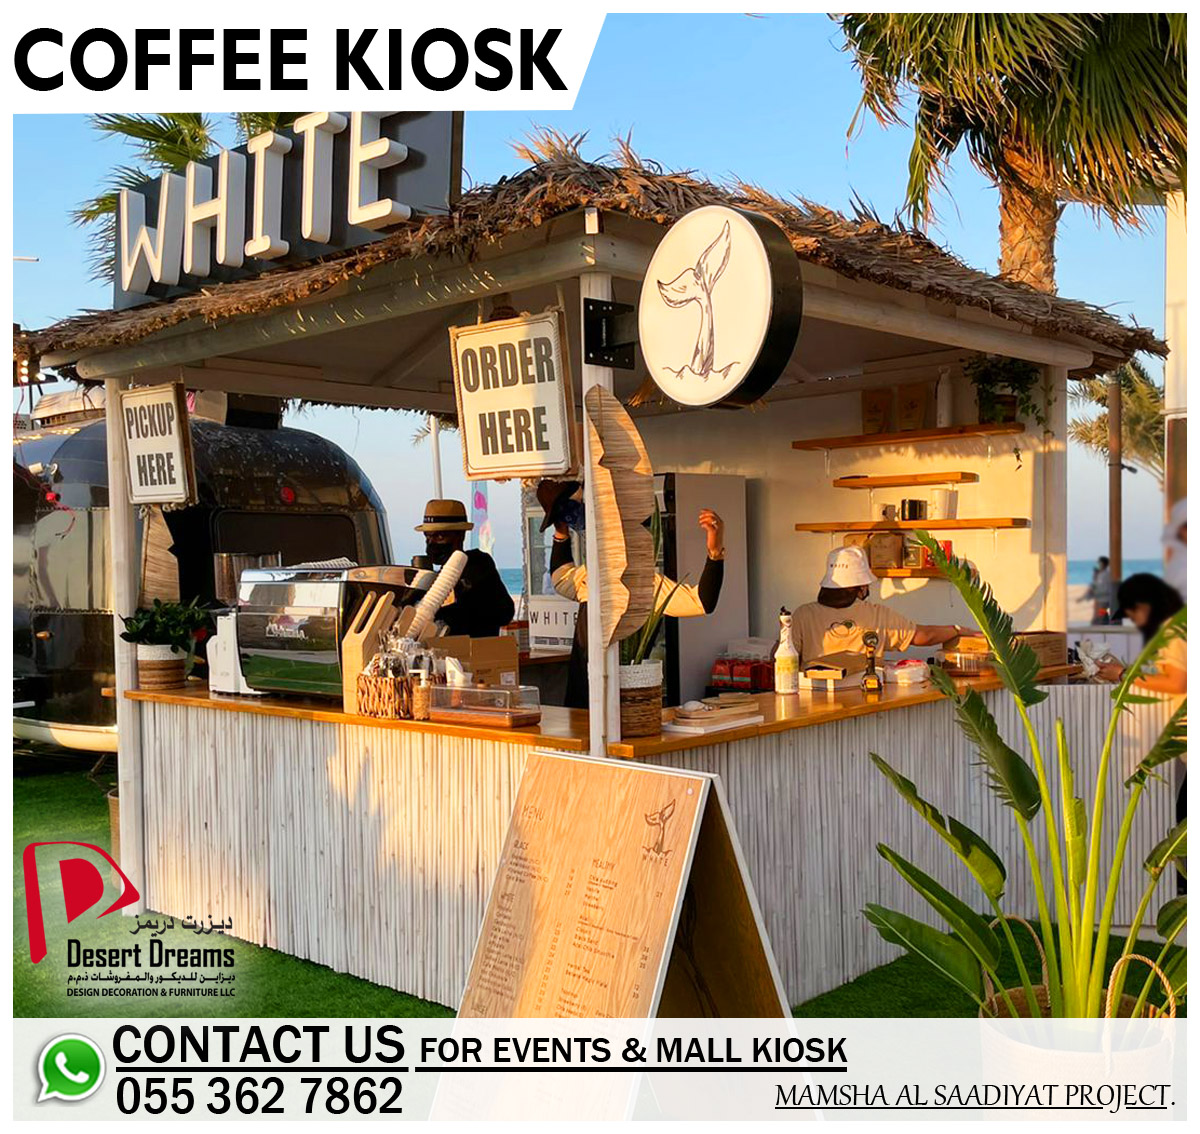 Food Kiosk in Uae | Coffee Kiosk | Rental Kiosk | Kiosk Designer.